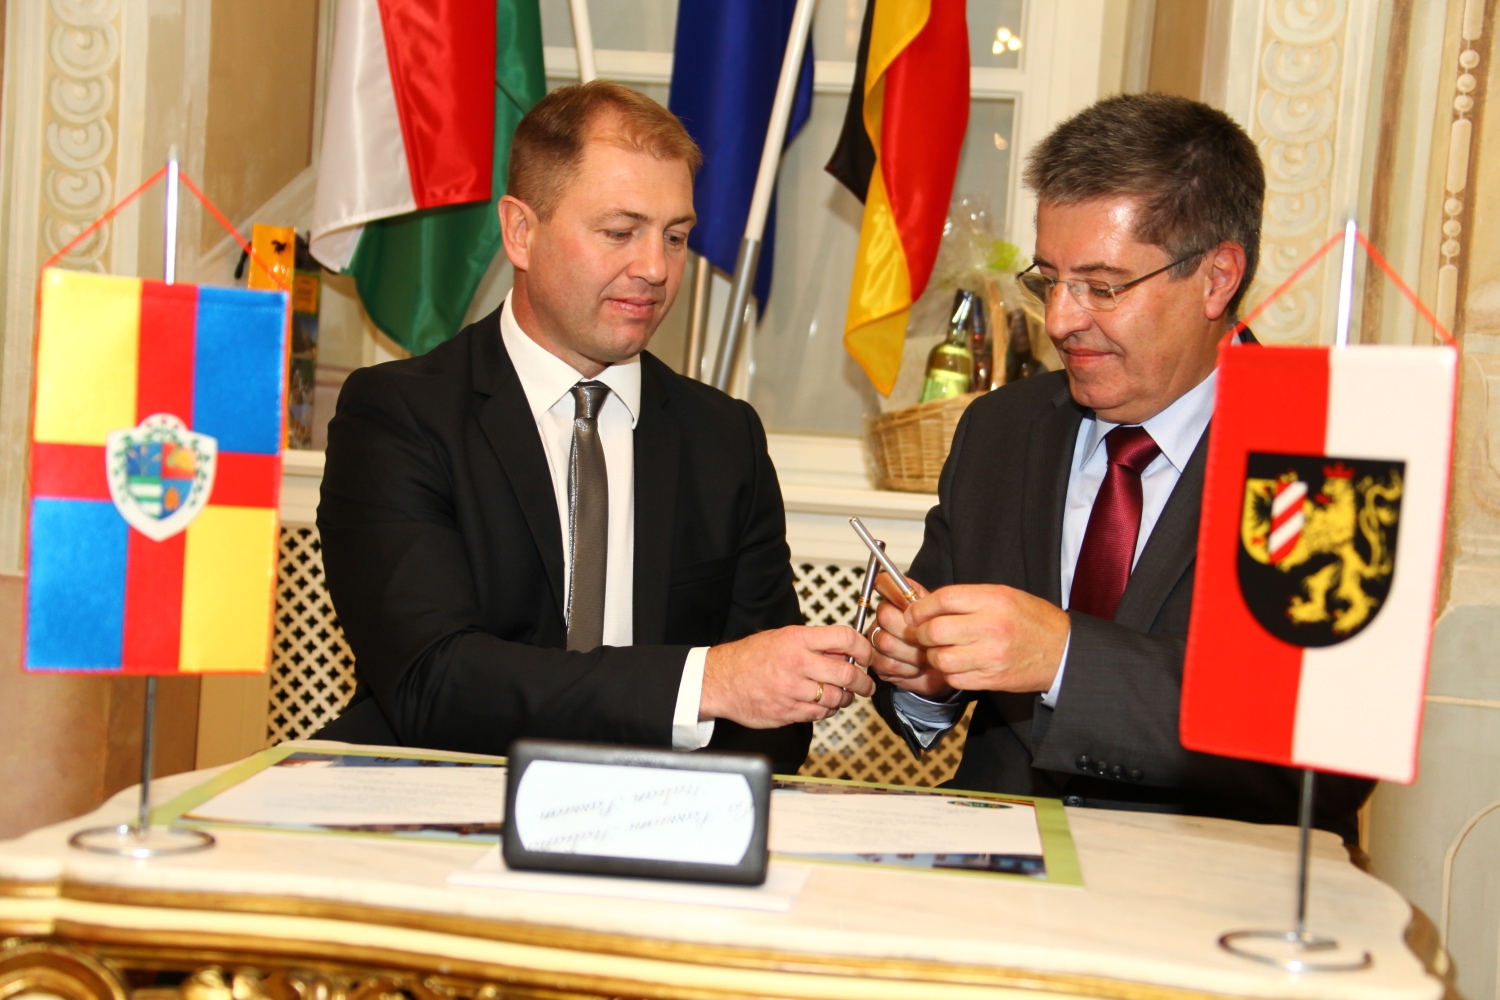 Altdorf és Dunaharaszti barátságának 20. évfordulója, 2013. október 4.